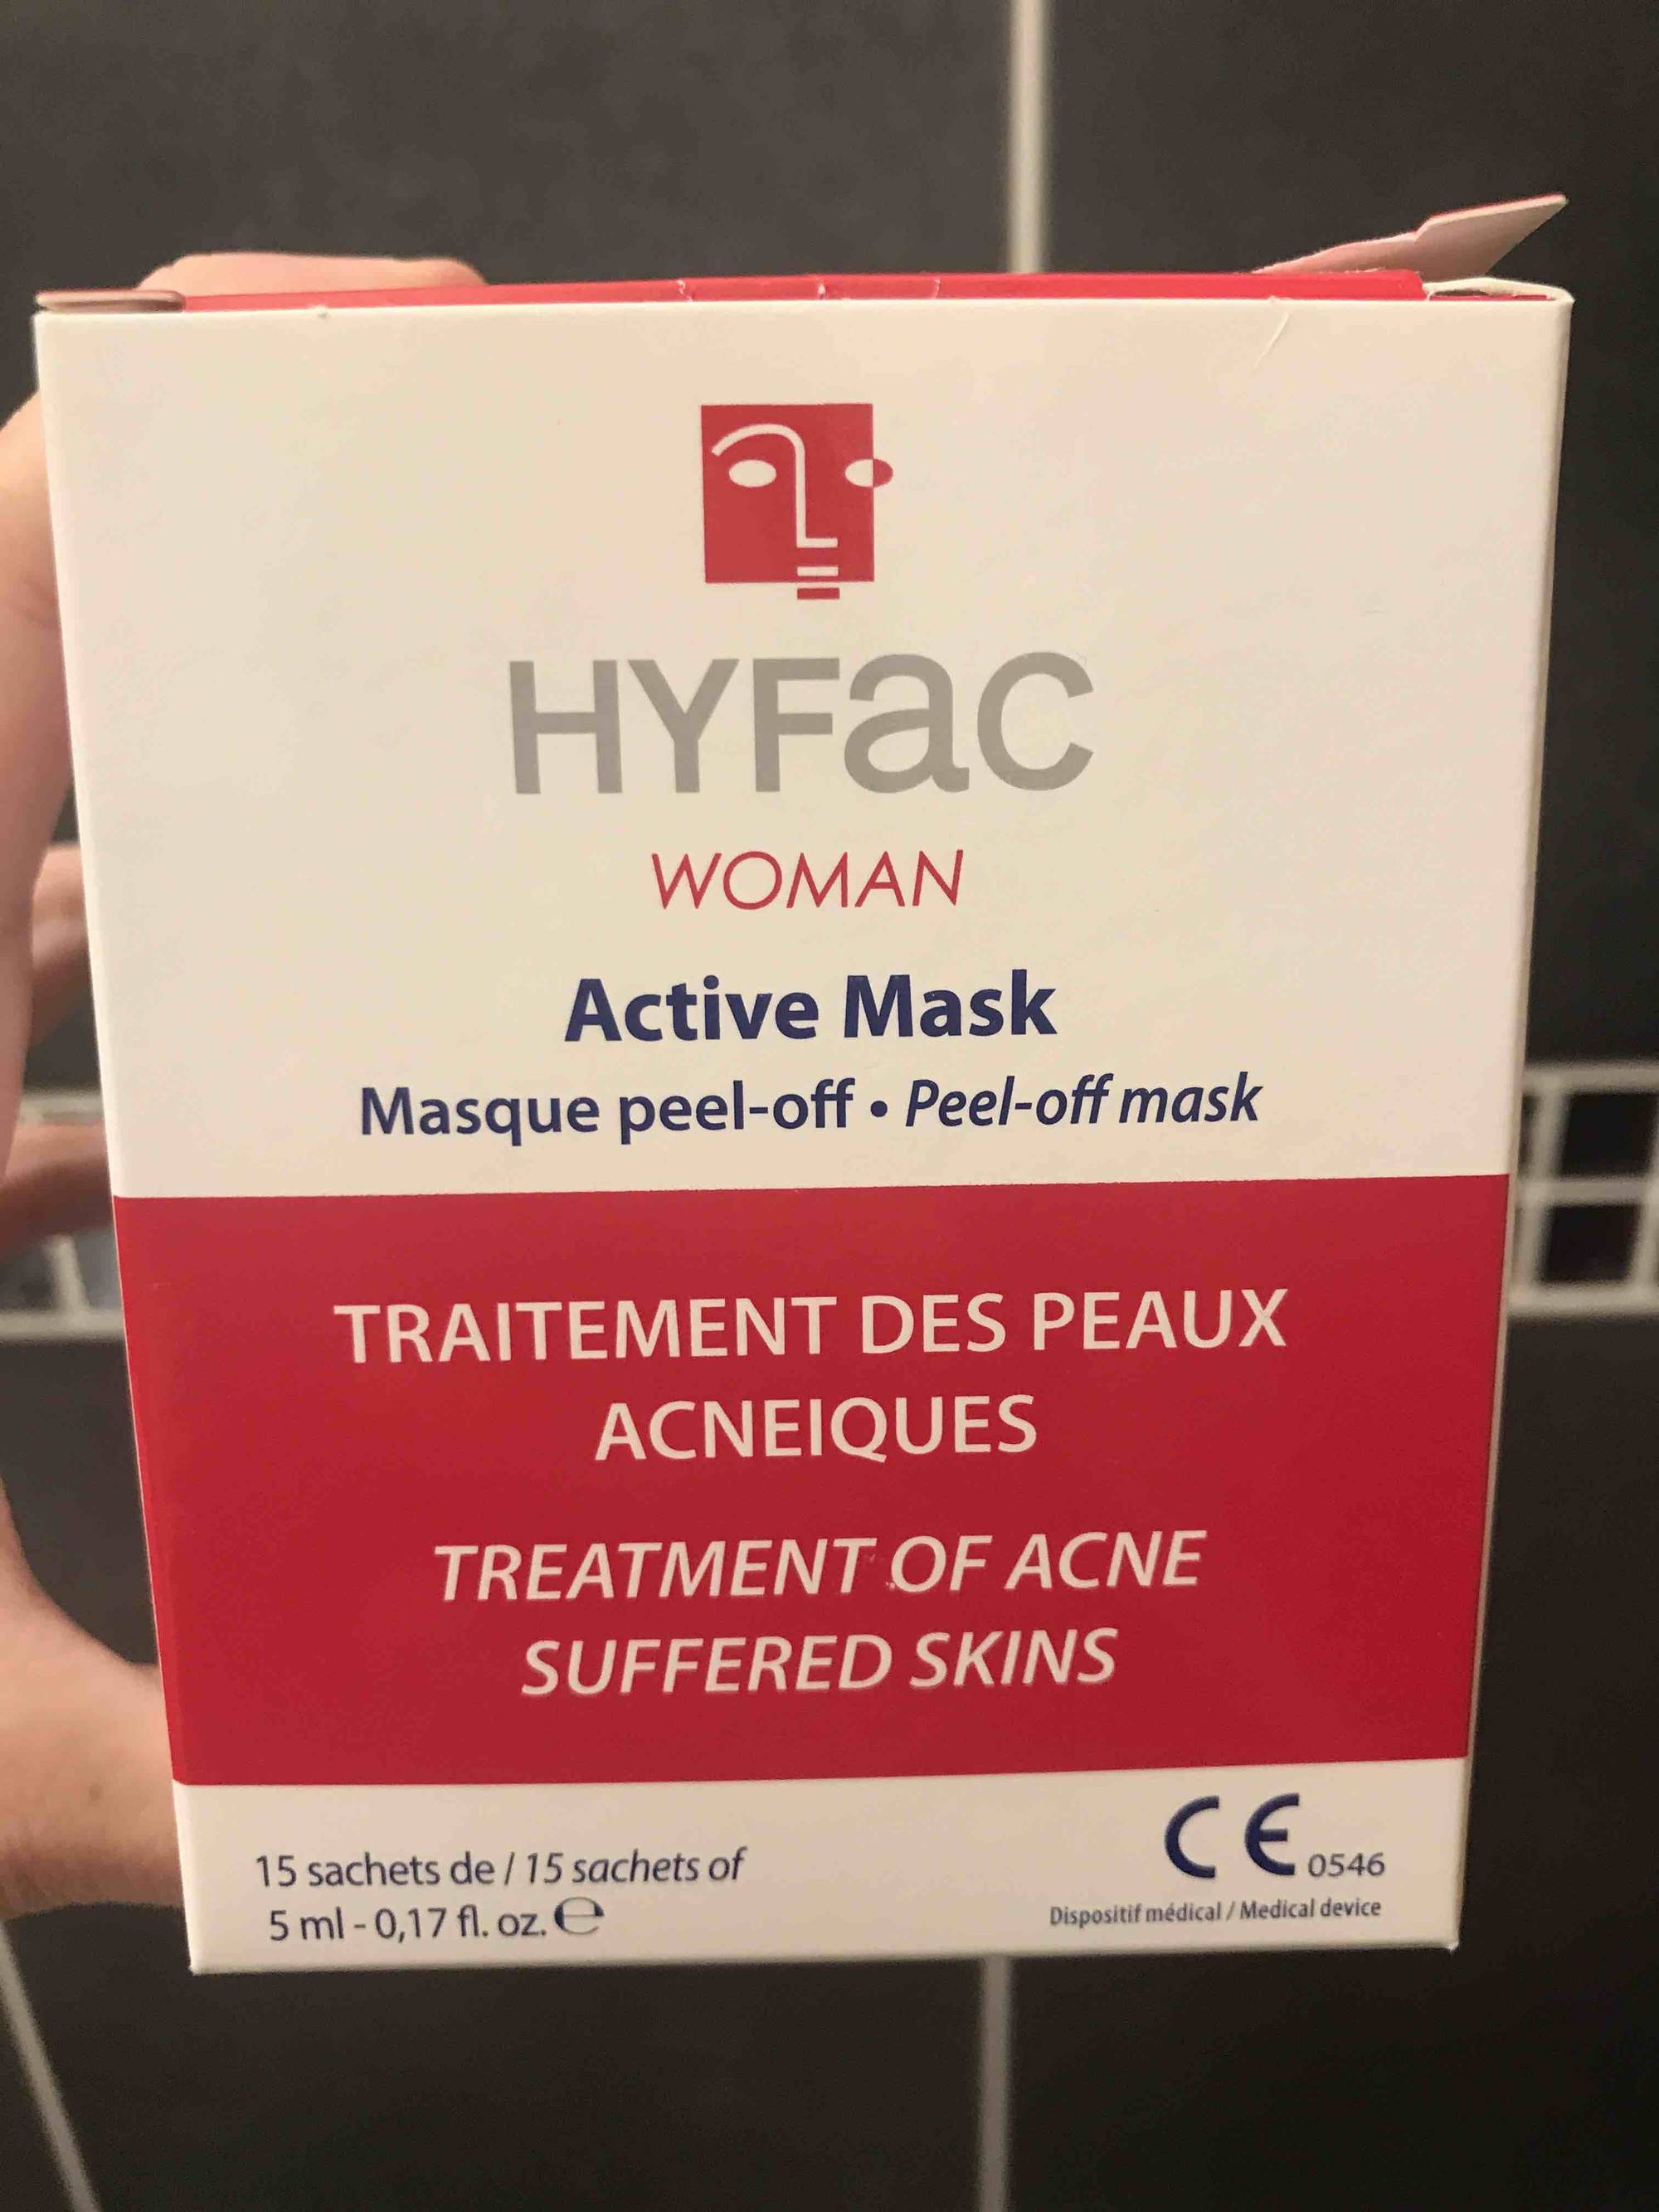 HYFAC - Woman active mask  - Traitement des peaux acnéiques 